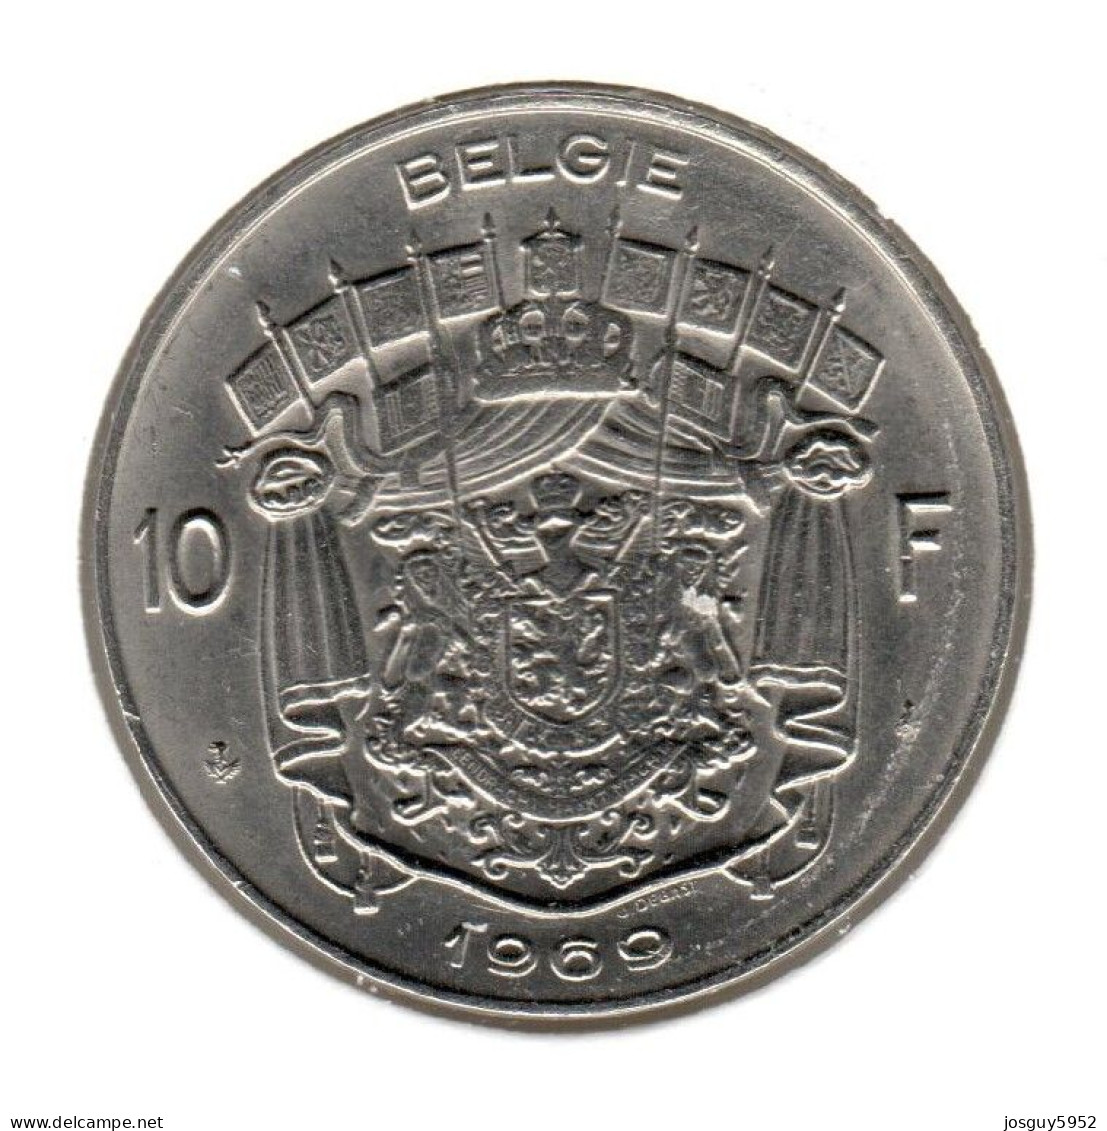 BELGIE - 10 FRANK 1969 - NEDERLANDS - PR - 10 Francs